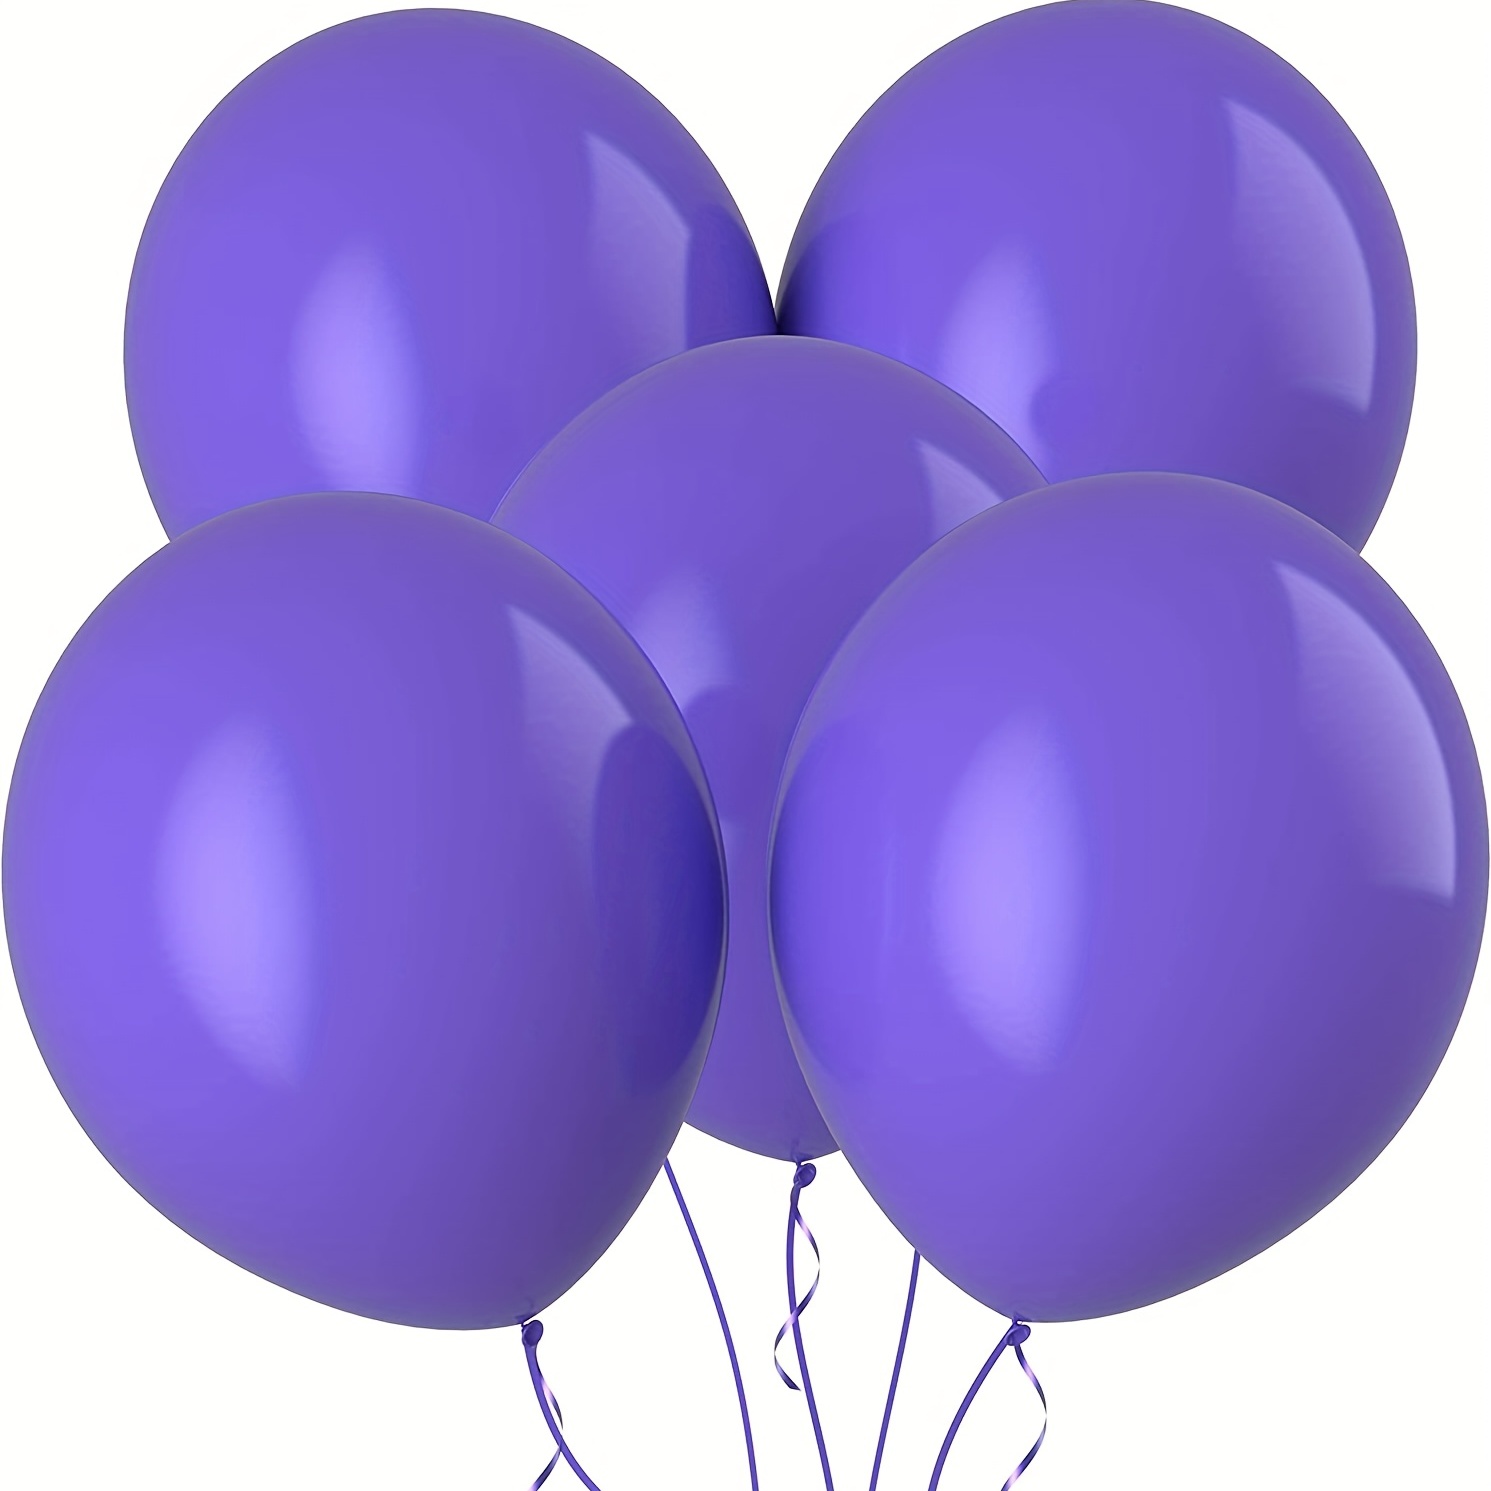  Globos gigantes de Prextex: 8 globos gigantes de 91cm para  sesión de fotos, bodas, fiesta para recién nacido, fiesta de cumpleaños y  decoración de eventos, globos redondos de látex resistentes, calidad